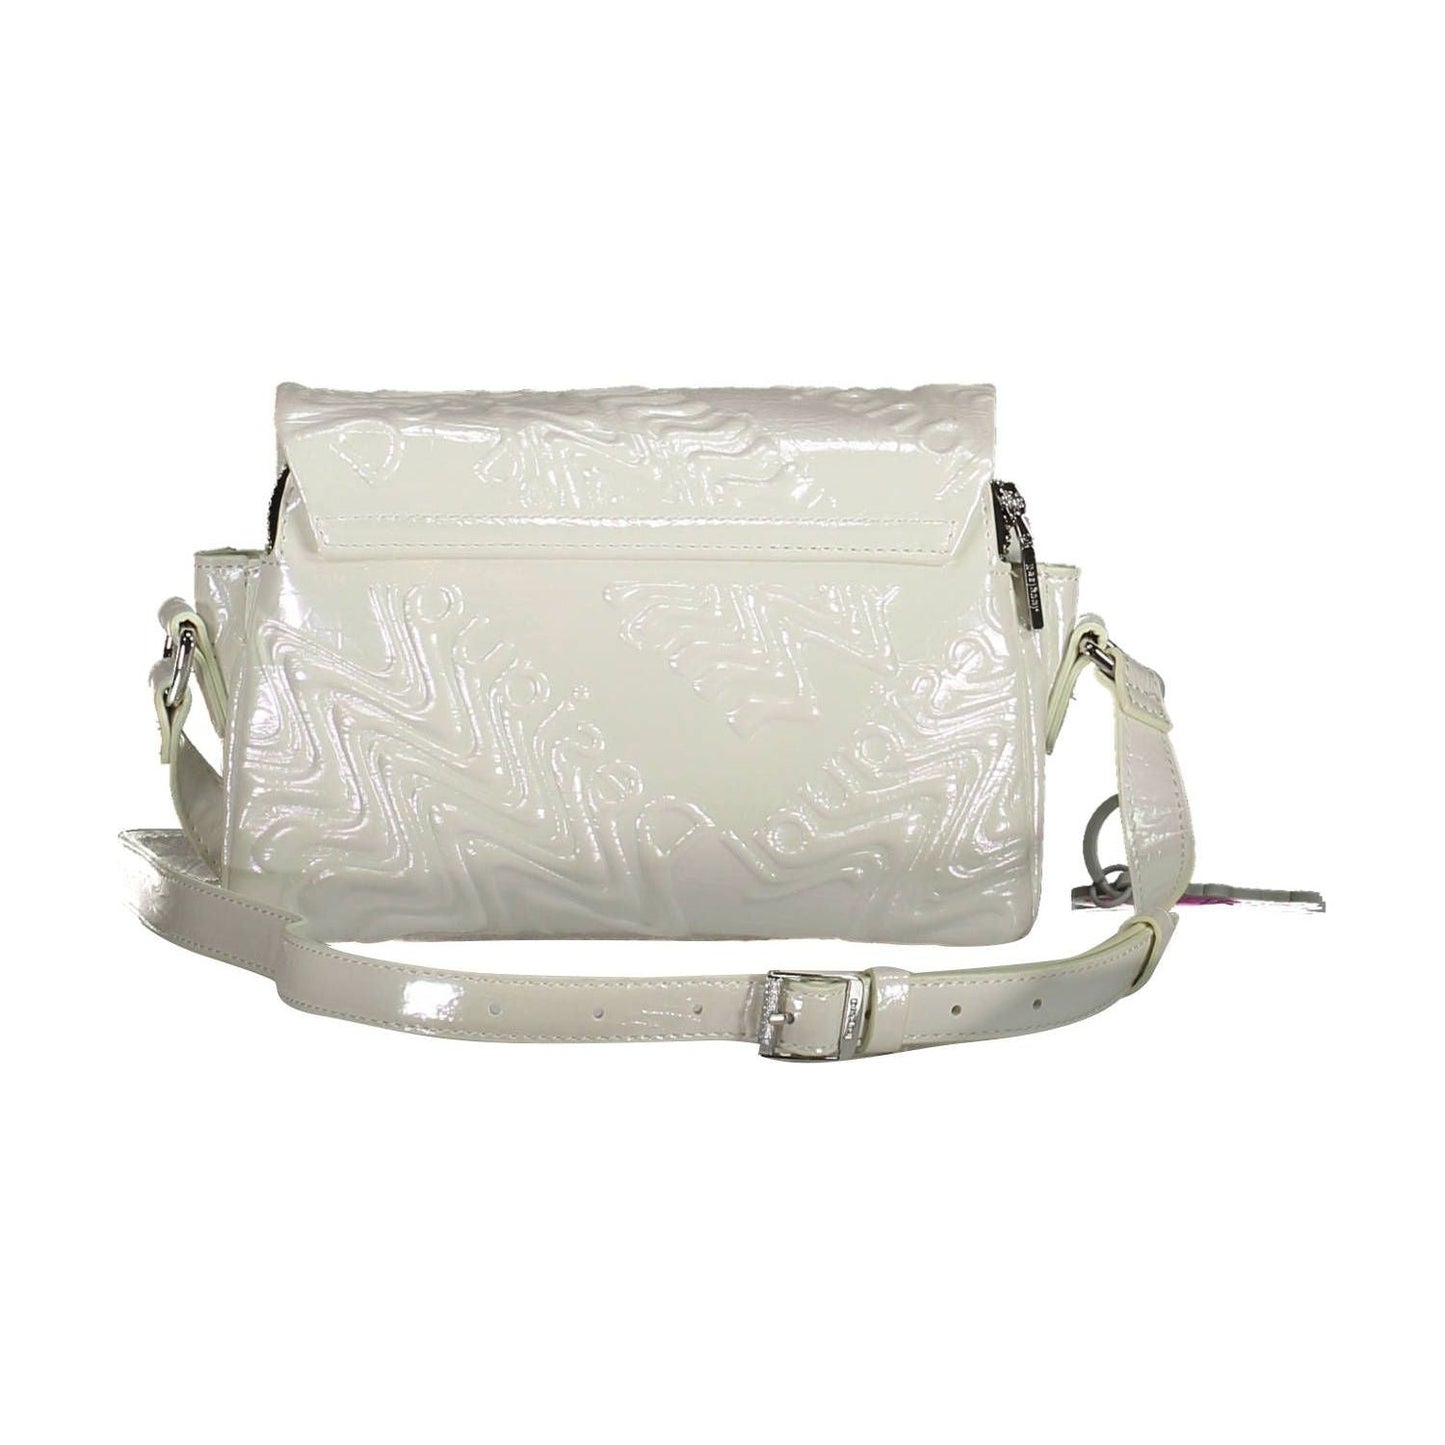 Iridescent Adjustable Shoulder Bag in White